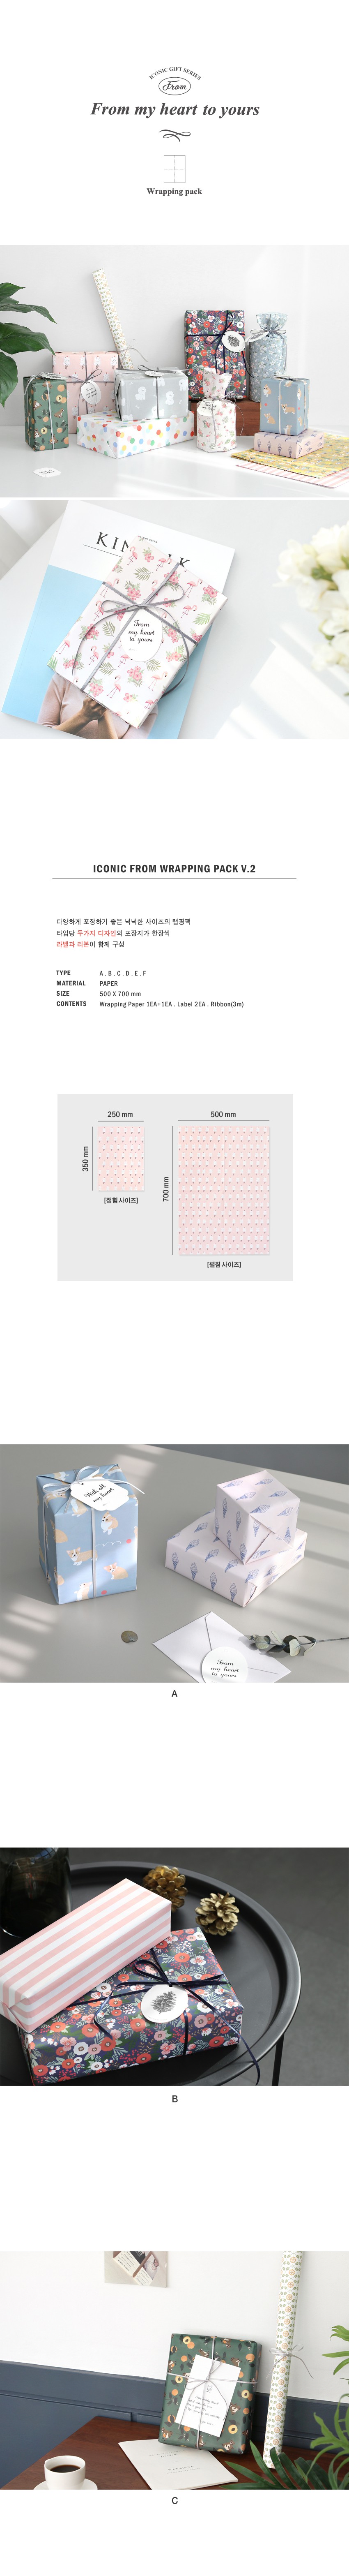 아이코닉 프롬 랩핑팩 v.2 3,000원 - 아이코닉 디자인문구, 선물포장, 포장지, 패턴 바보사랑 아이코닉 프롬 랩핑팩 v.2 3,000원 - 아이코닉 디자인문구, 선물포장, 포장지, 패턴 바보사랑